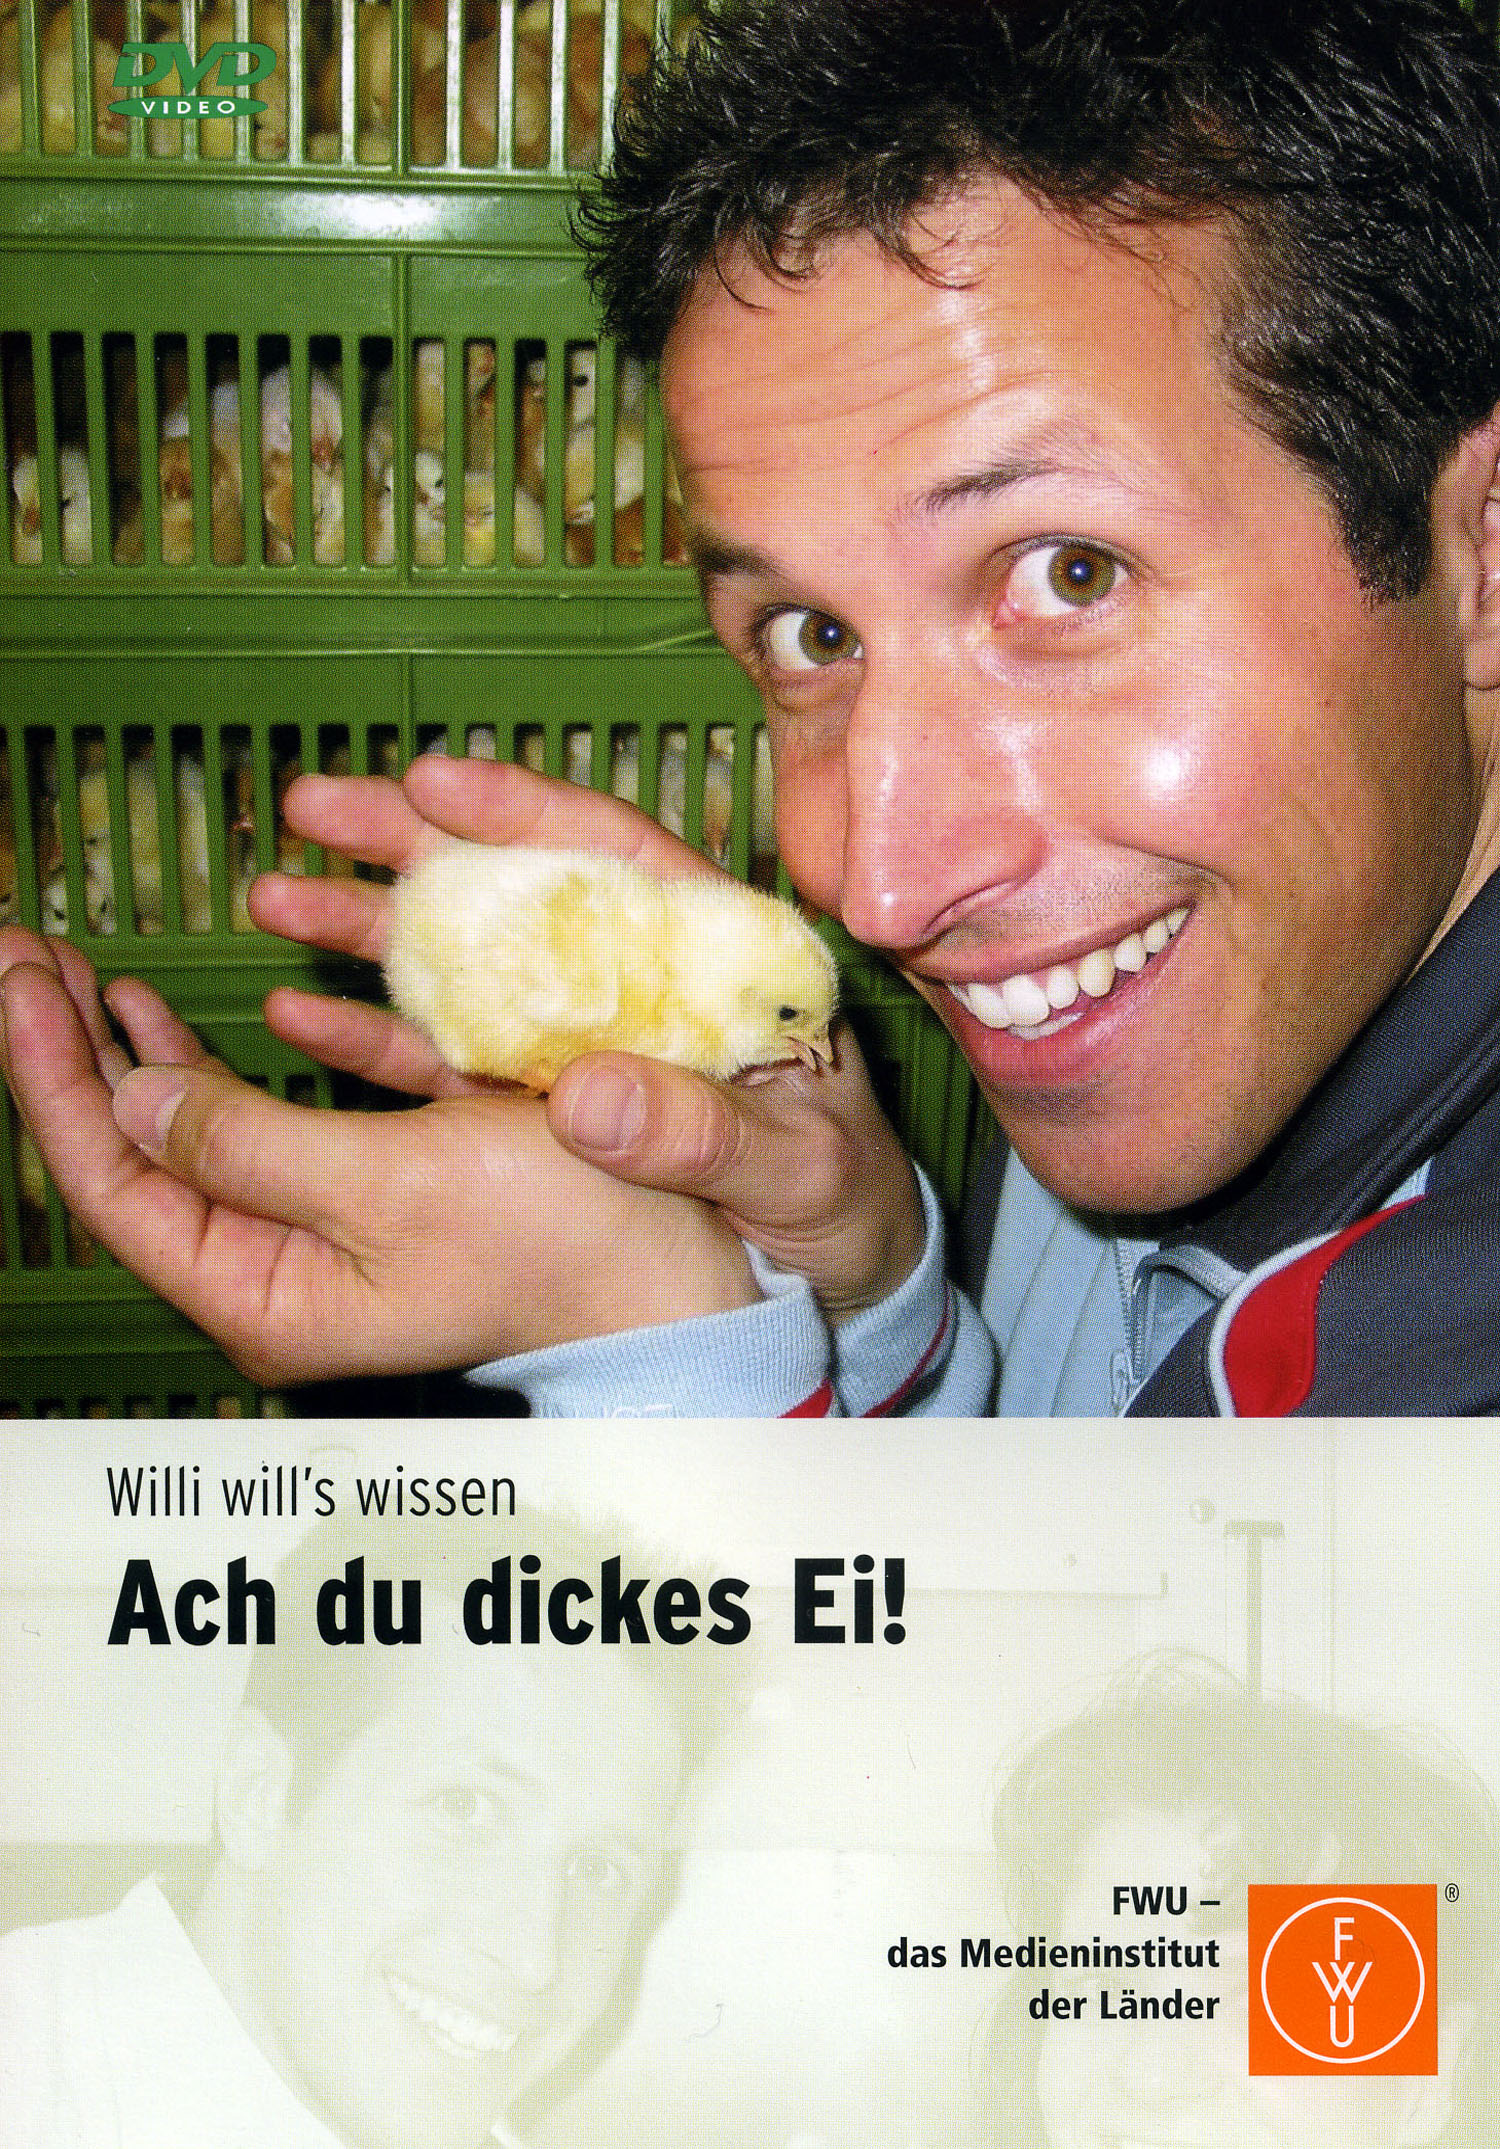 Willi will´s wissen: Ach du dickes Ei!